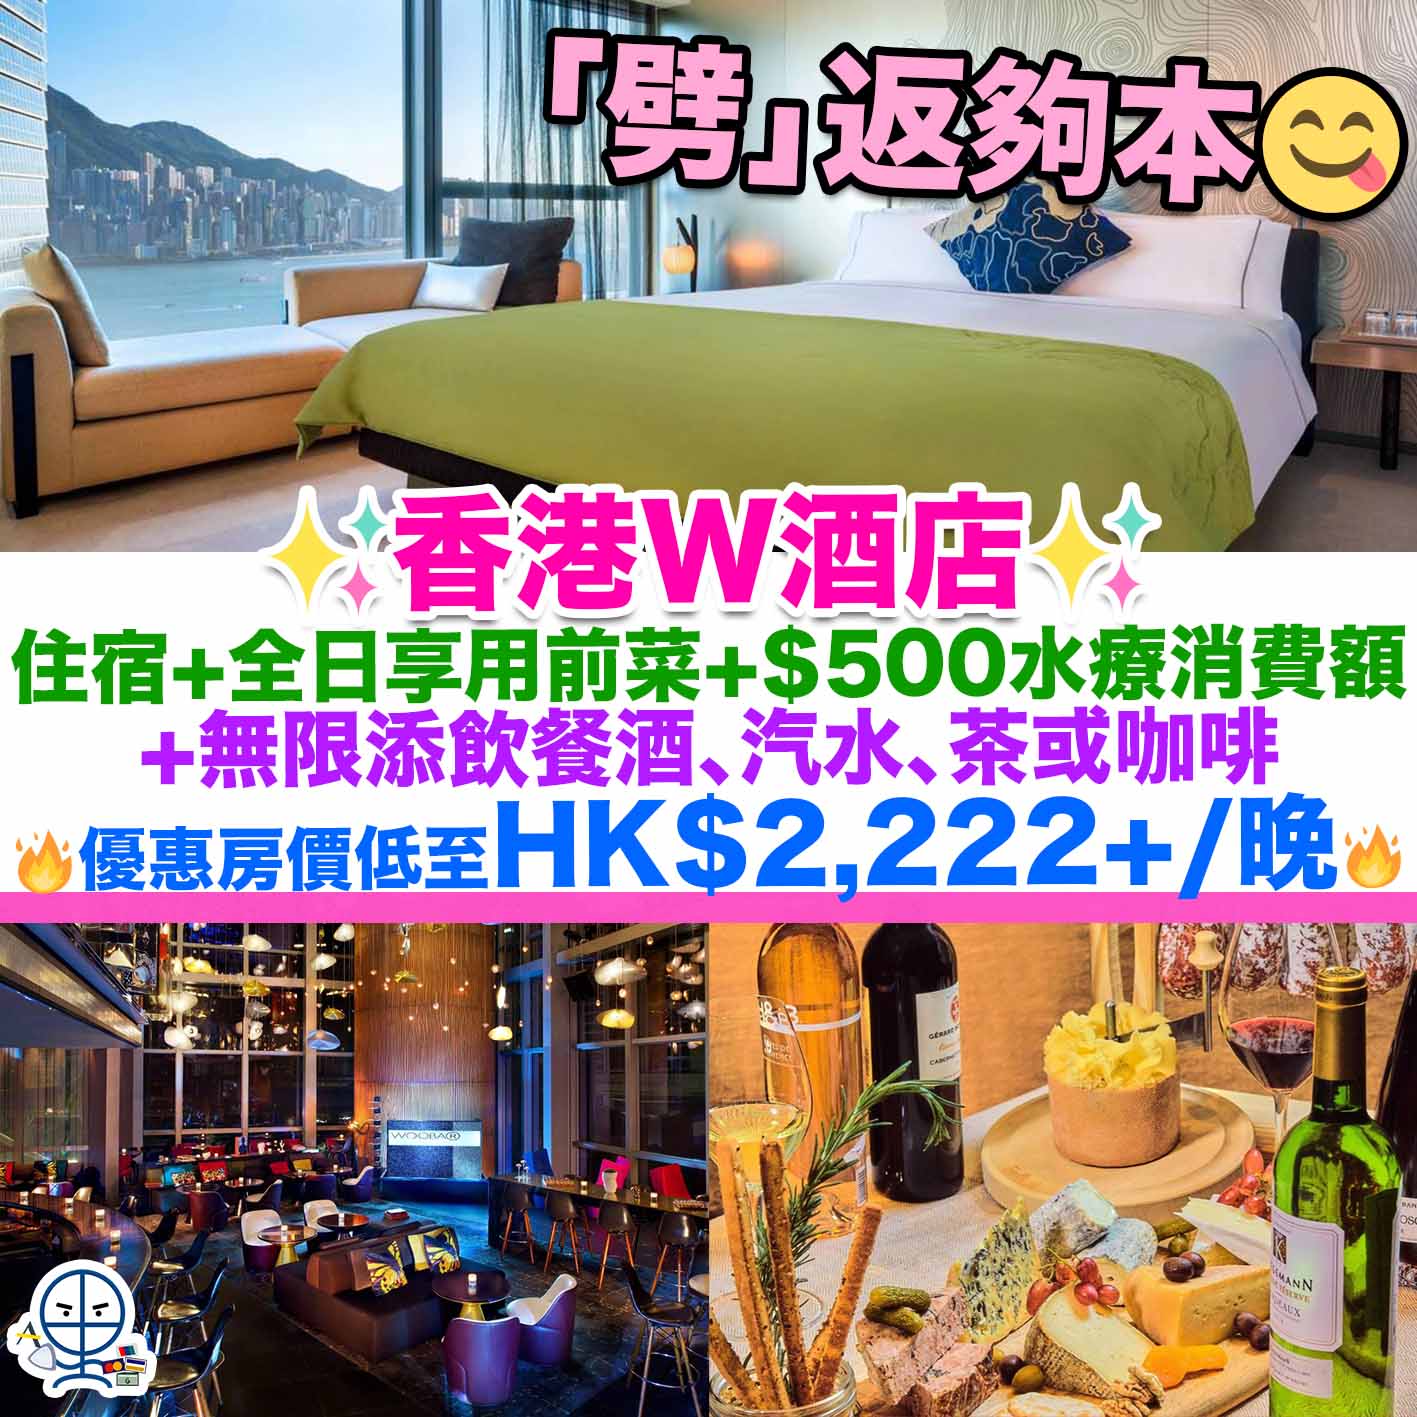 W Hotel-staycation-W酒店優惠-WOOBAR-本地旅遊-香港酒店staycation